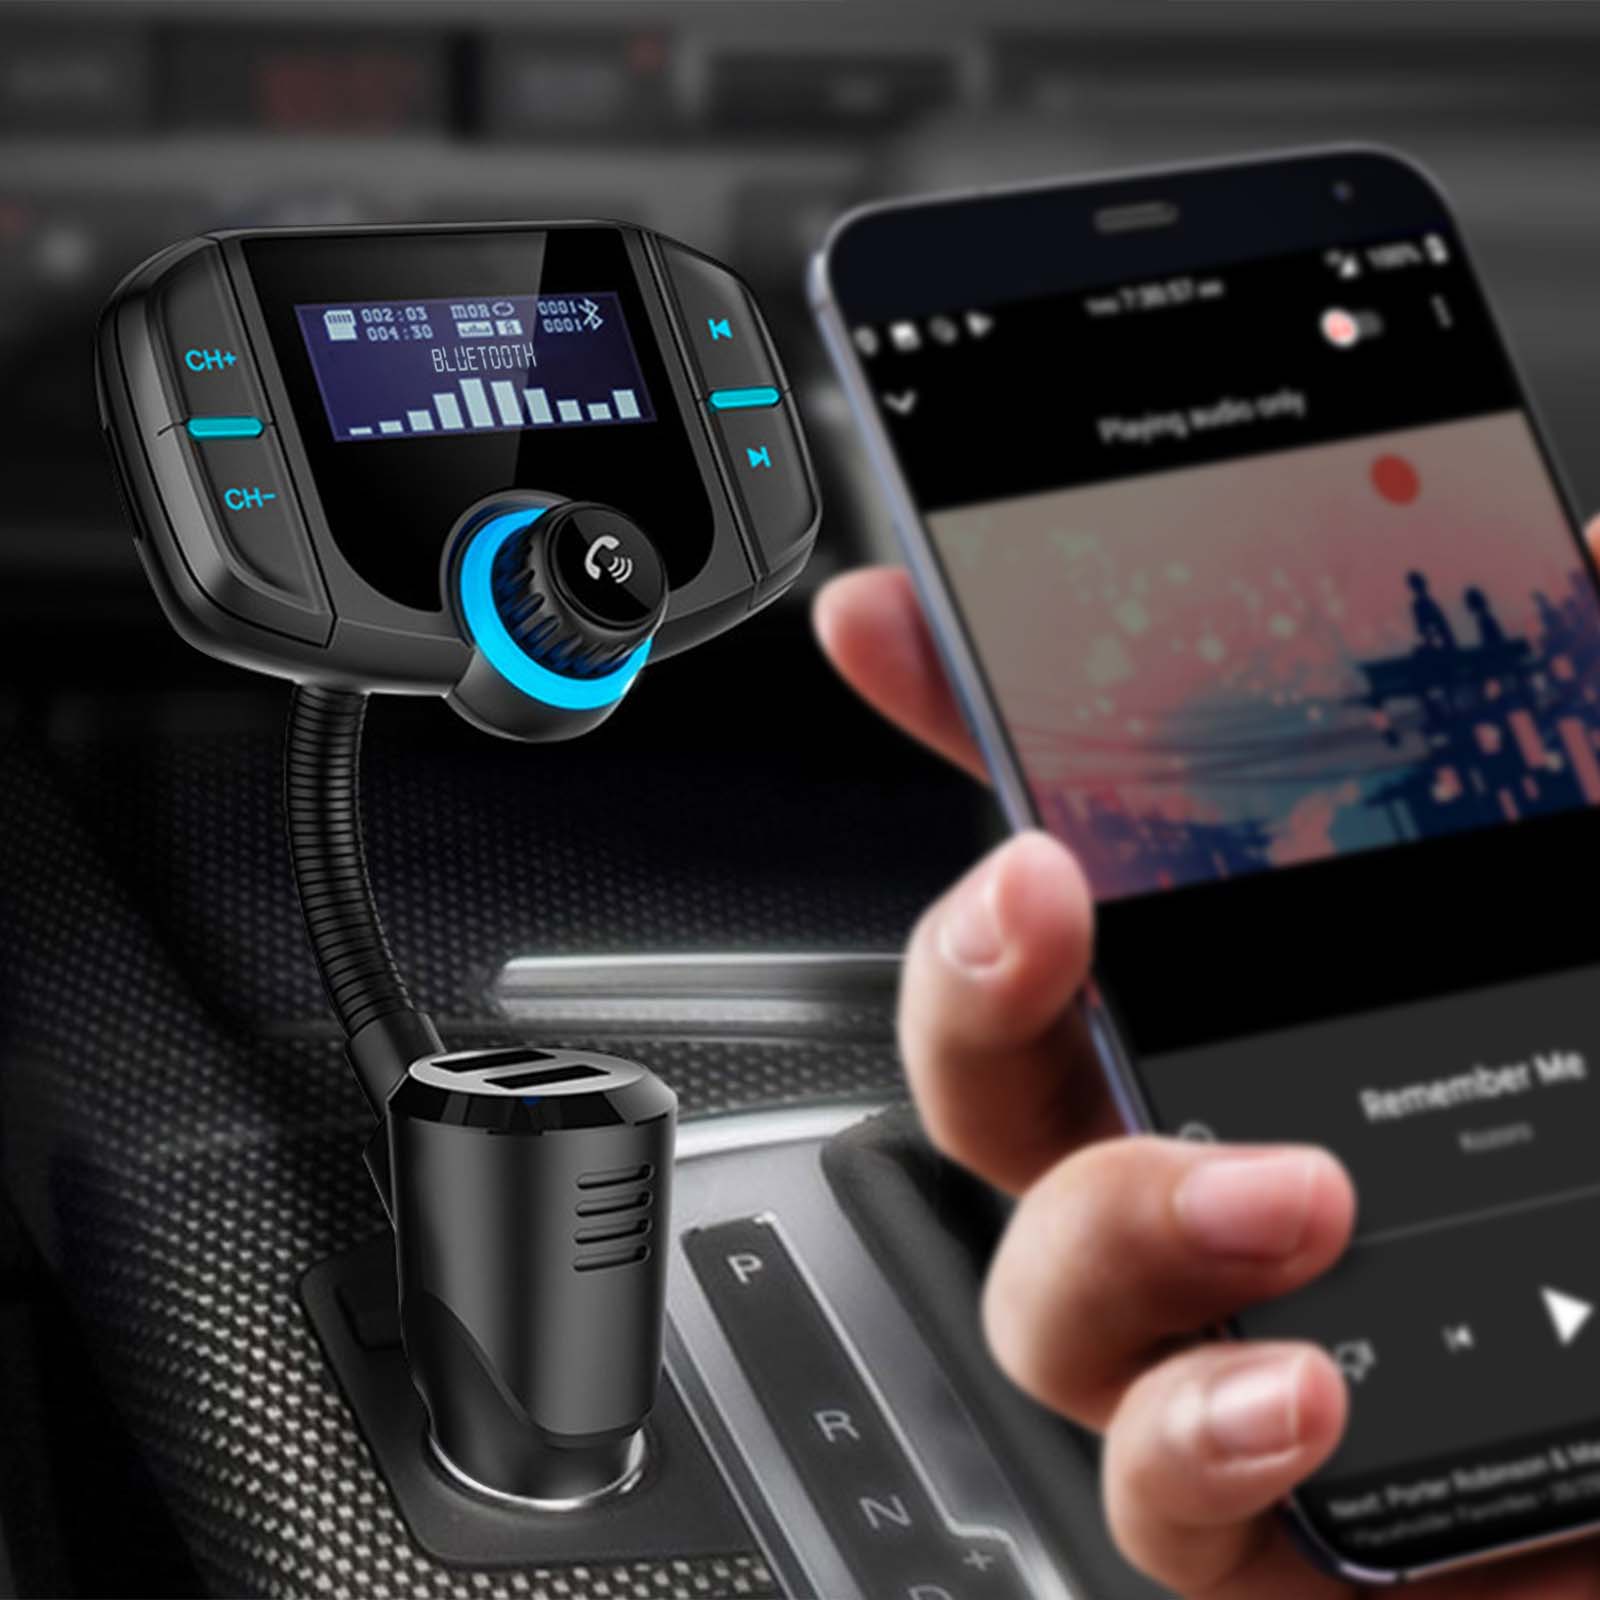 Kit main libre voiture Bluetooth avec fonction Transmetteur FM MP3